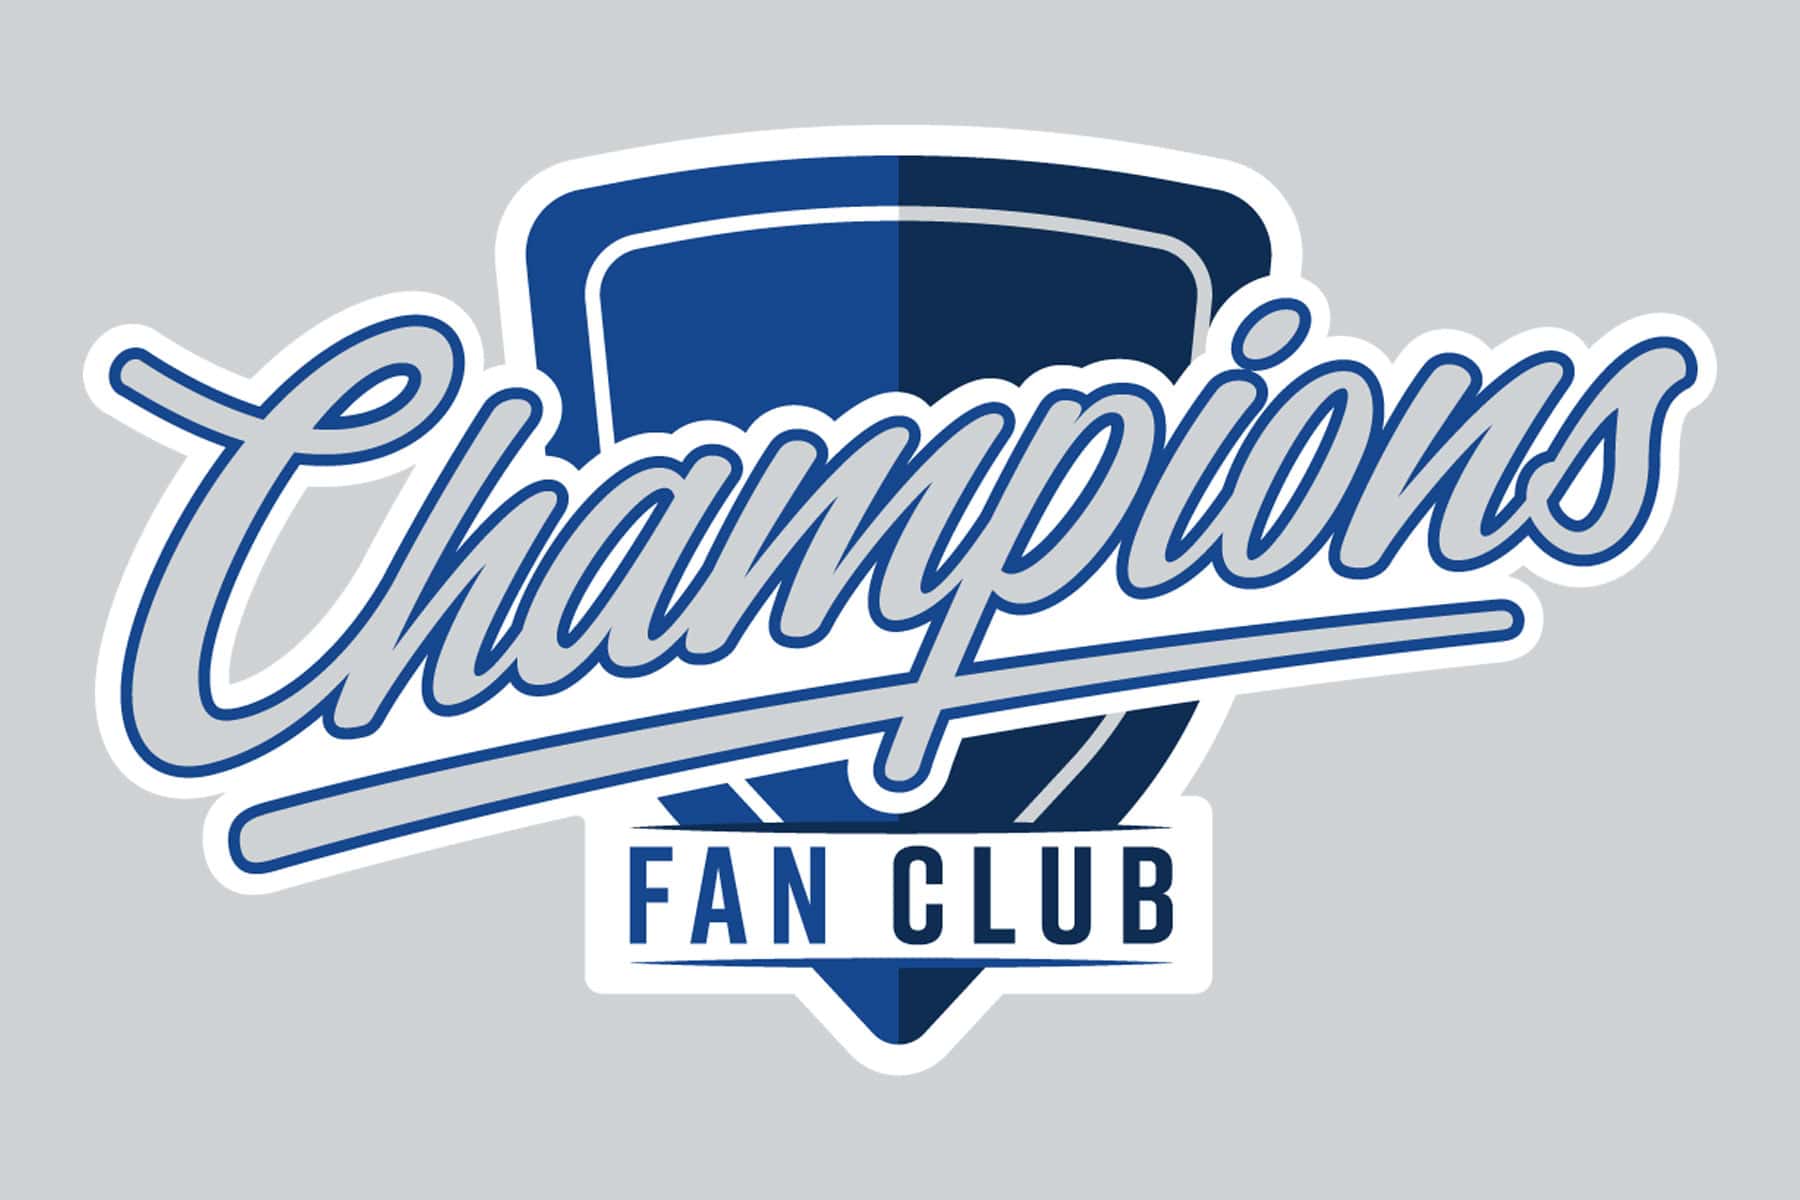 Champions Fan Club